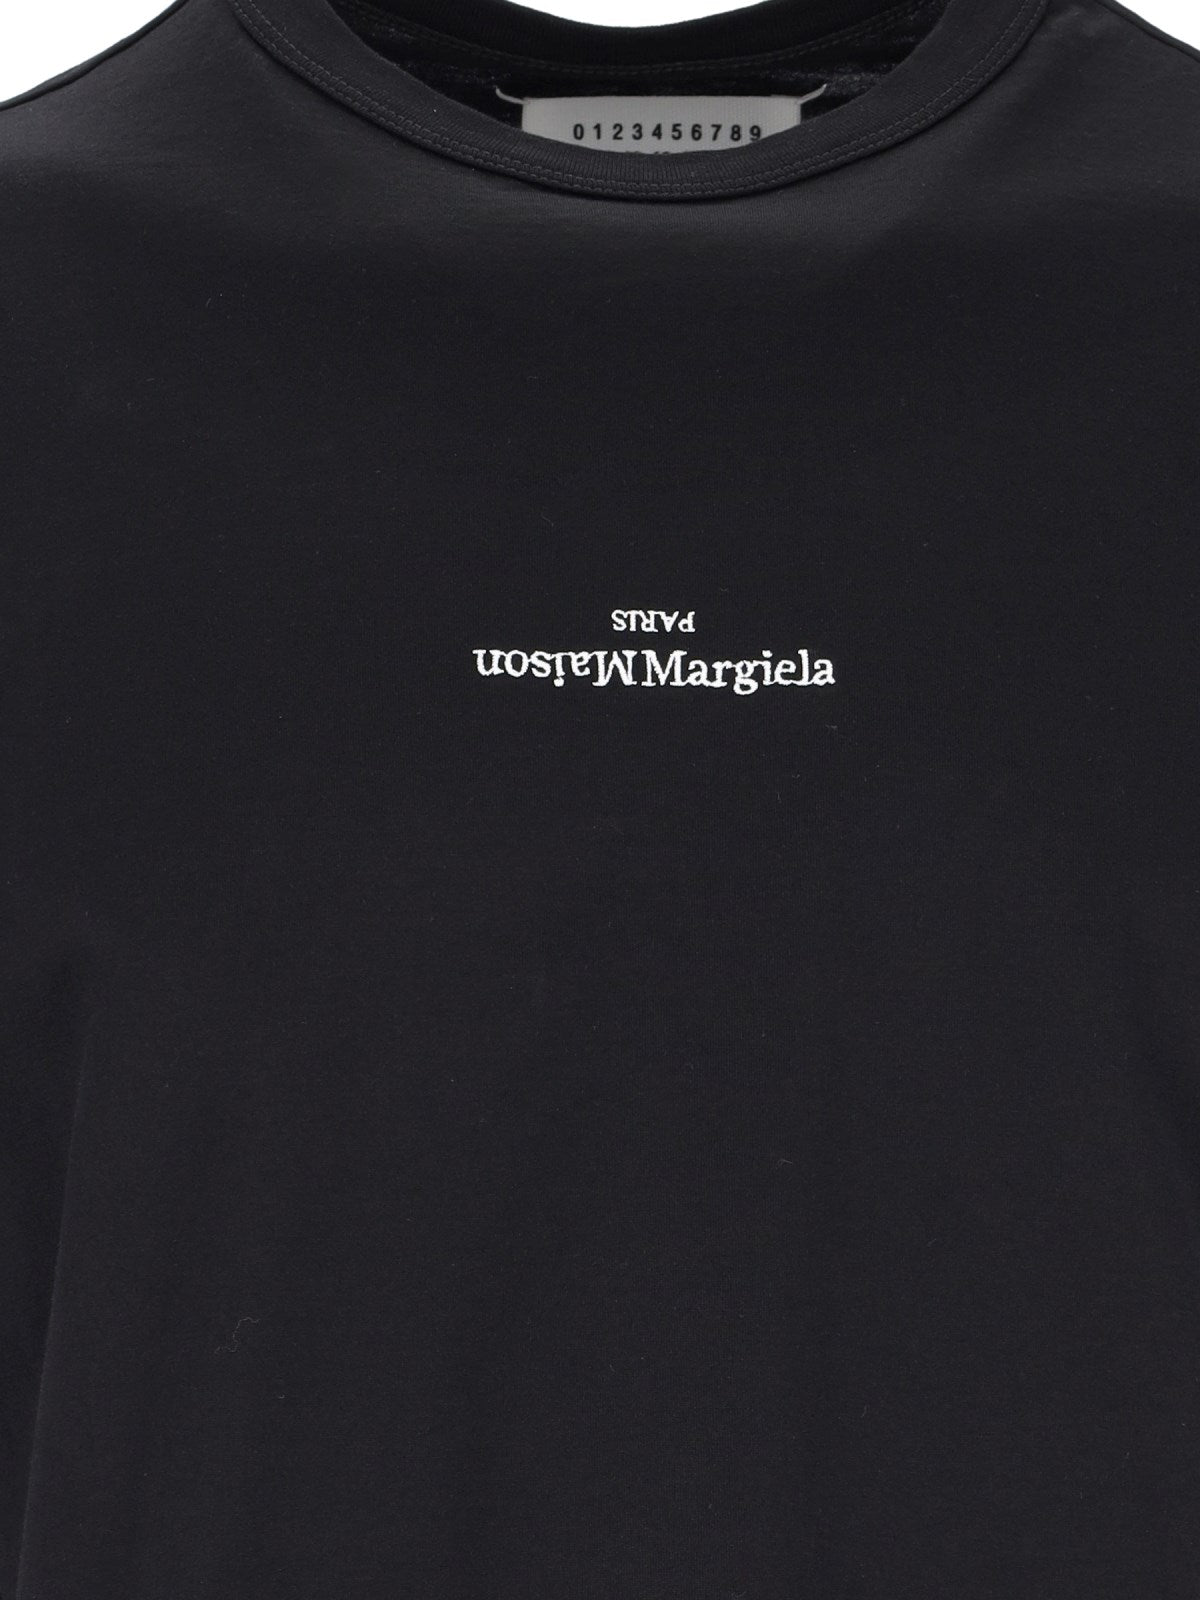 Maison Margiela T-Shirt "distorted logo"-t-shirt-Maison Margiela-T-shirt "distorted logo" Maison Margiela, in cotone nero, girocollo, maniche corte, ricamo logo bianco petto, orlo dritto.-Dresso